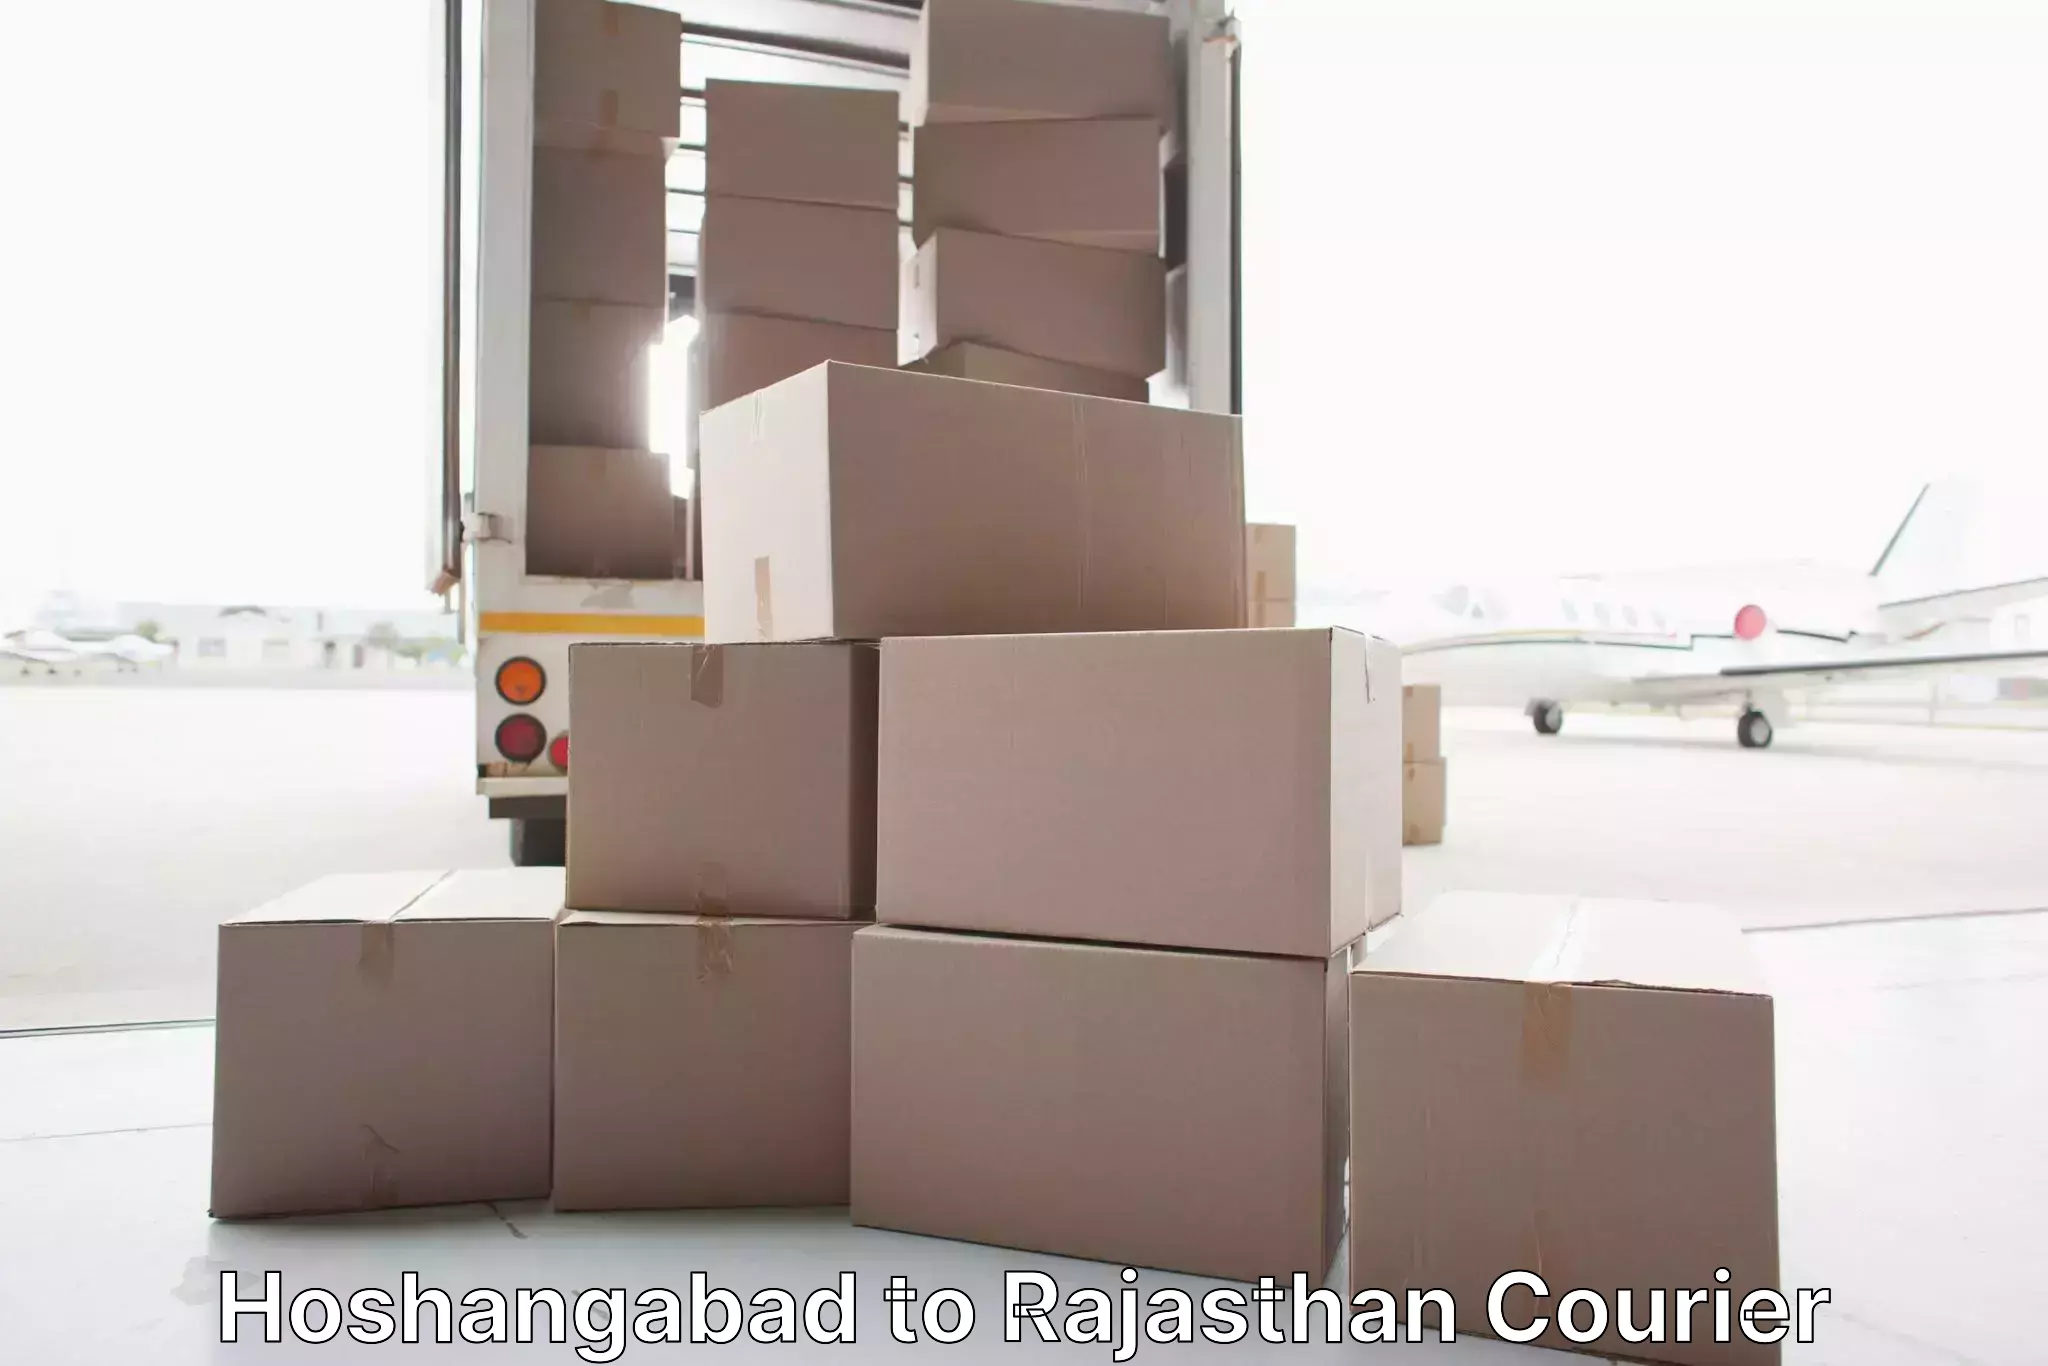 Furniture moving experts Hoshangabad to Dudu